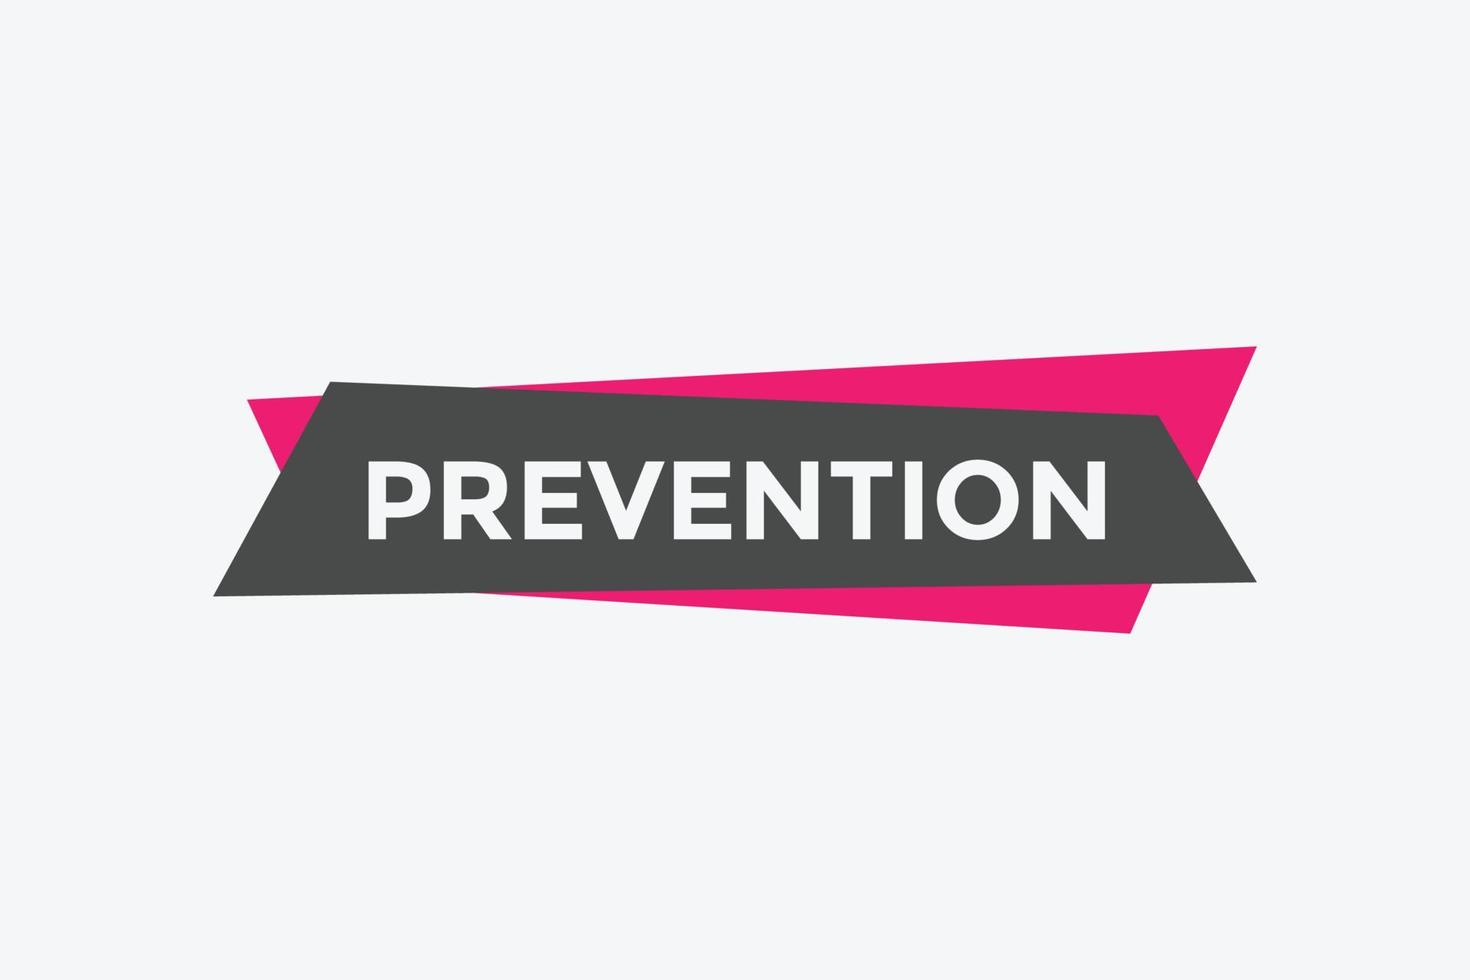 bouton de prévention. bulle. bannière web colorée de prévention. illustration vectorielle vecteur